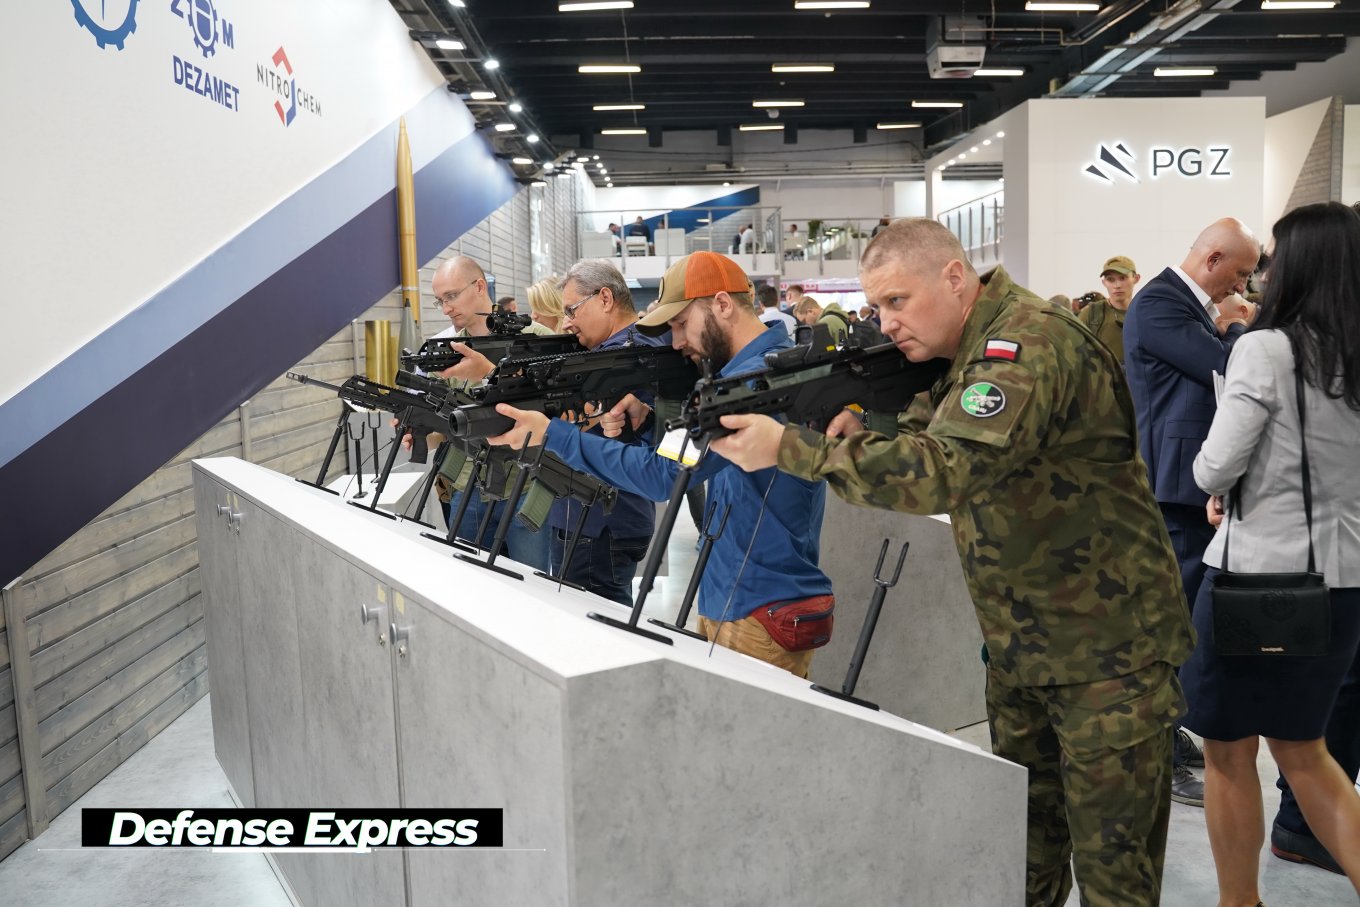 виставка оборонної происловості MSPO-2021, СЗТФ Прогрес,Targi Kielce, Defense Express